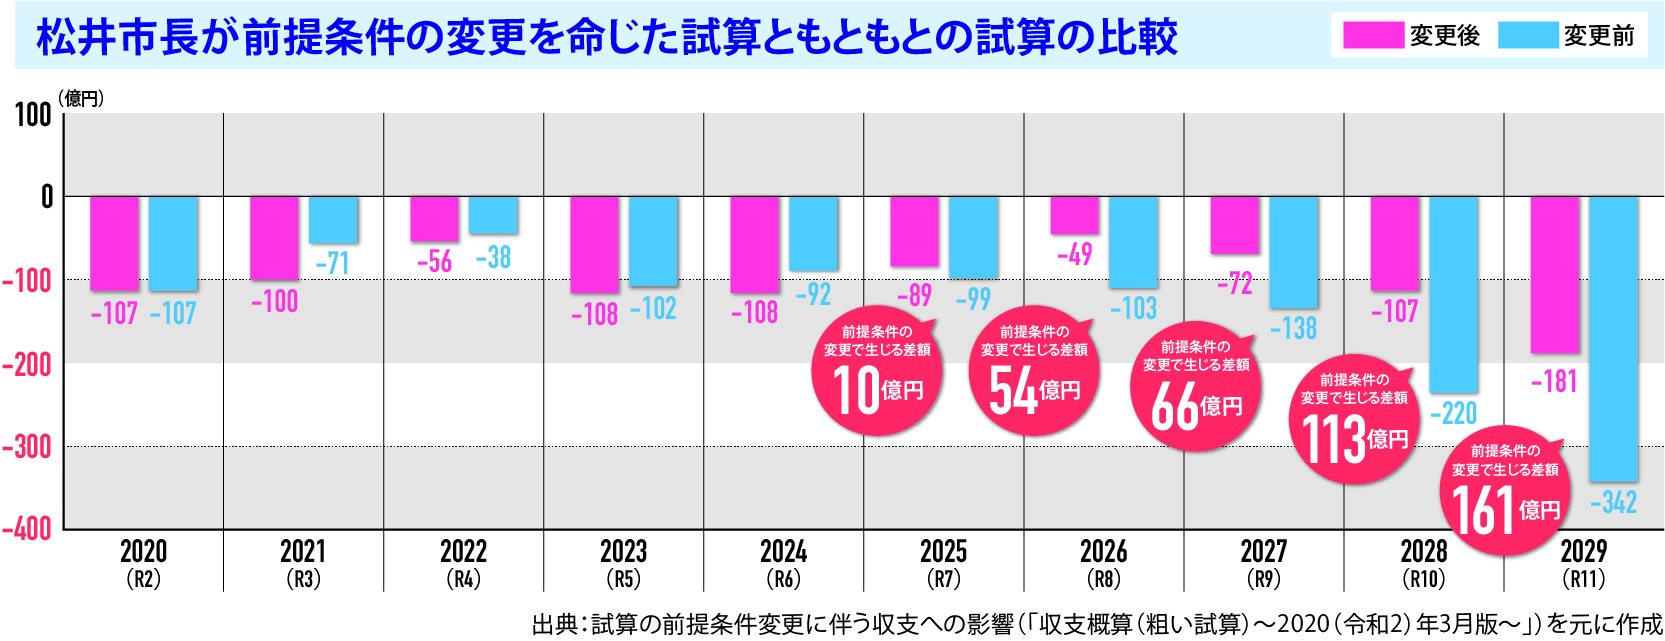 松井市長が前提条件の変更を命じた試算ともともとの試算の比較